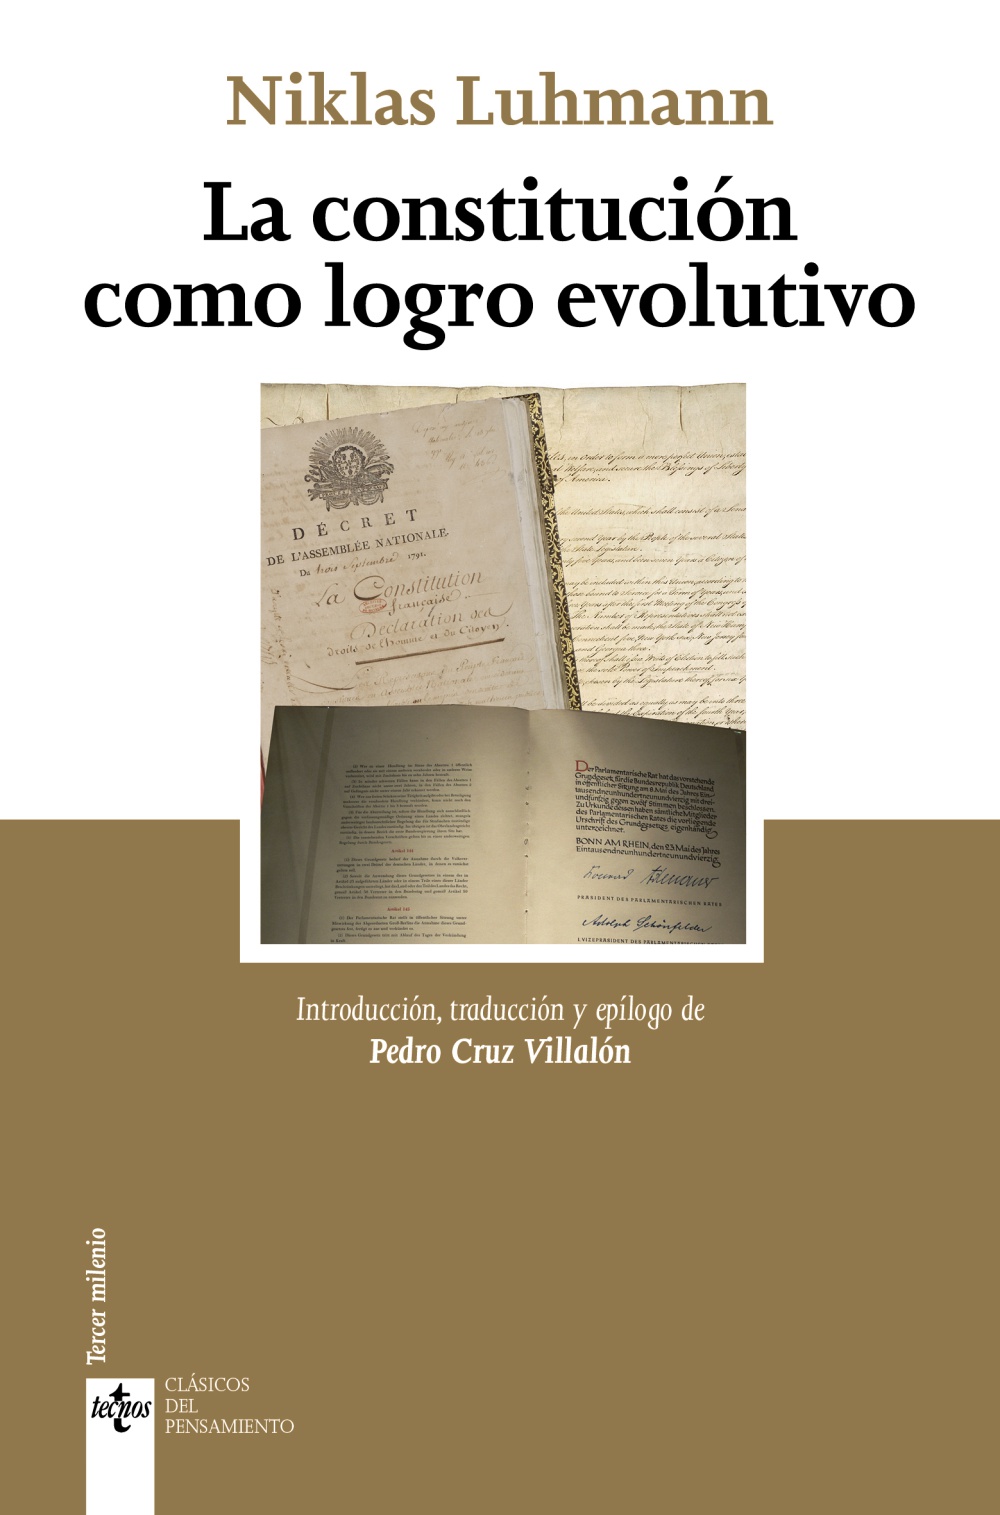 Imagen de portada del libro La constitución como logro evolutivo